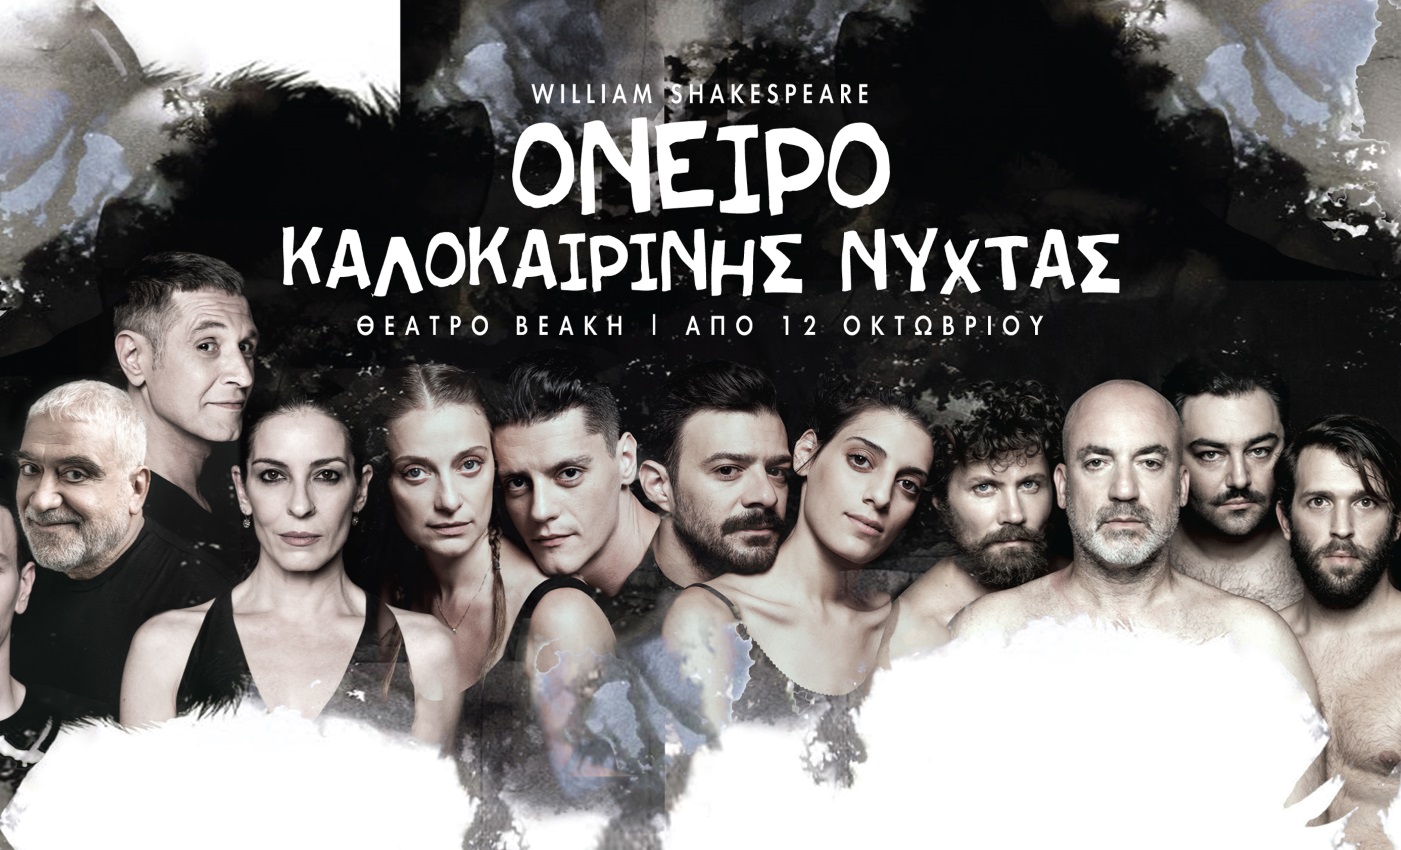 Το “Όνειρο Καλοκαιρινής Νύχτας” σε σκηνοθεσία Αιμίλιου Χειλάκη και Μανώλη Δούνια έρχεται στην Αθήνα!